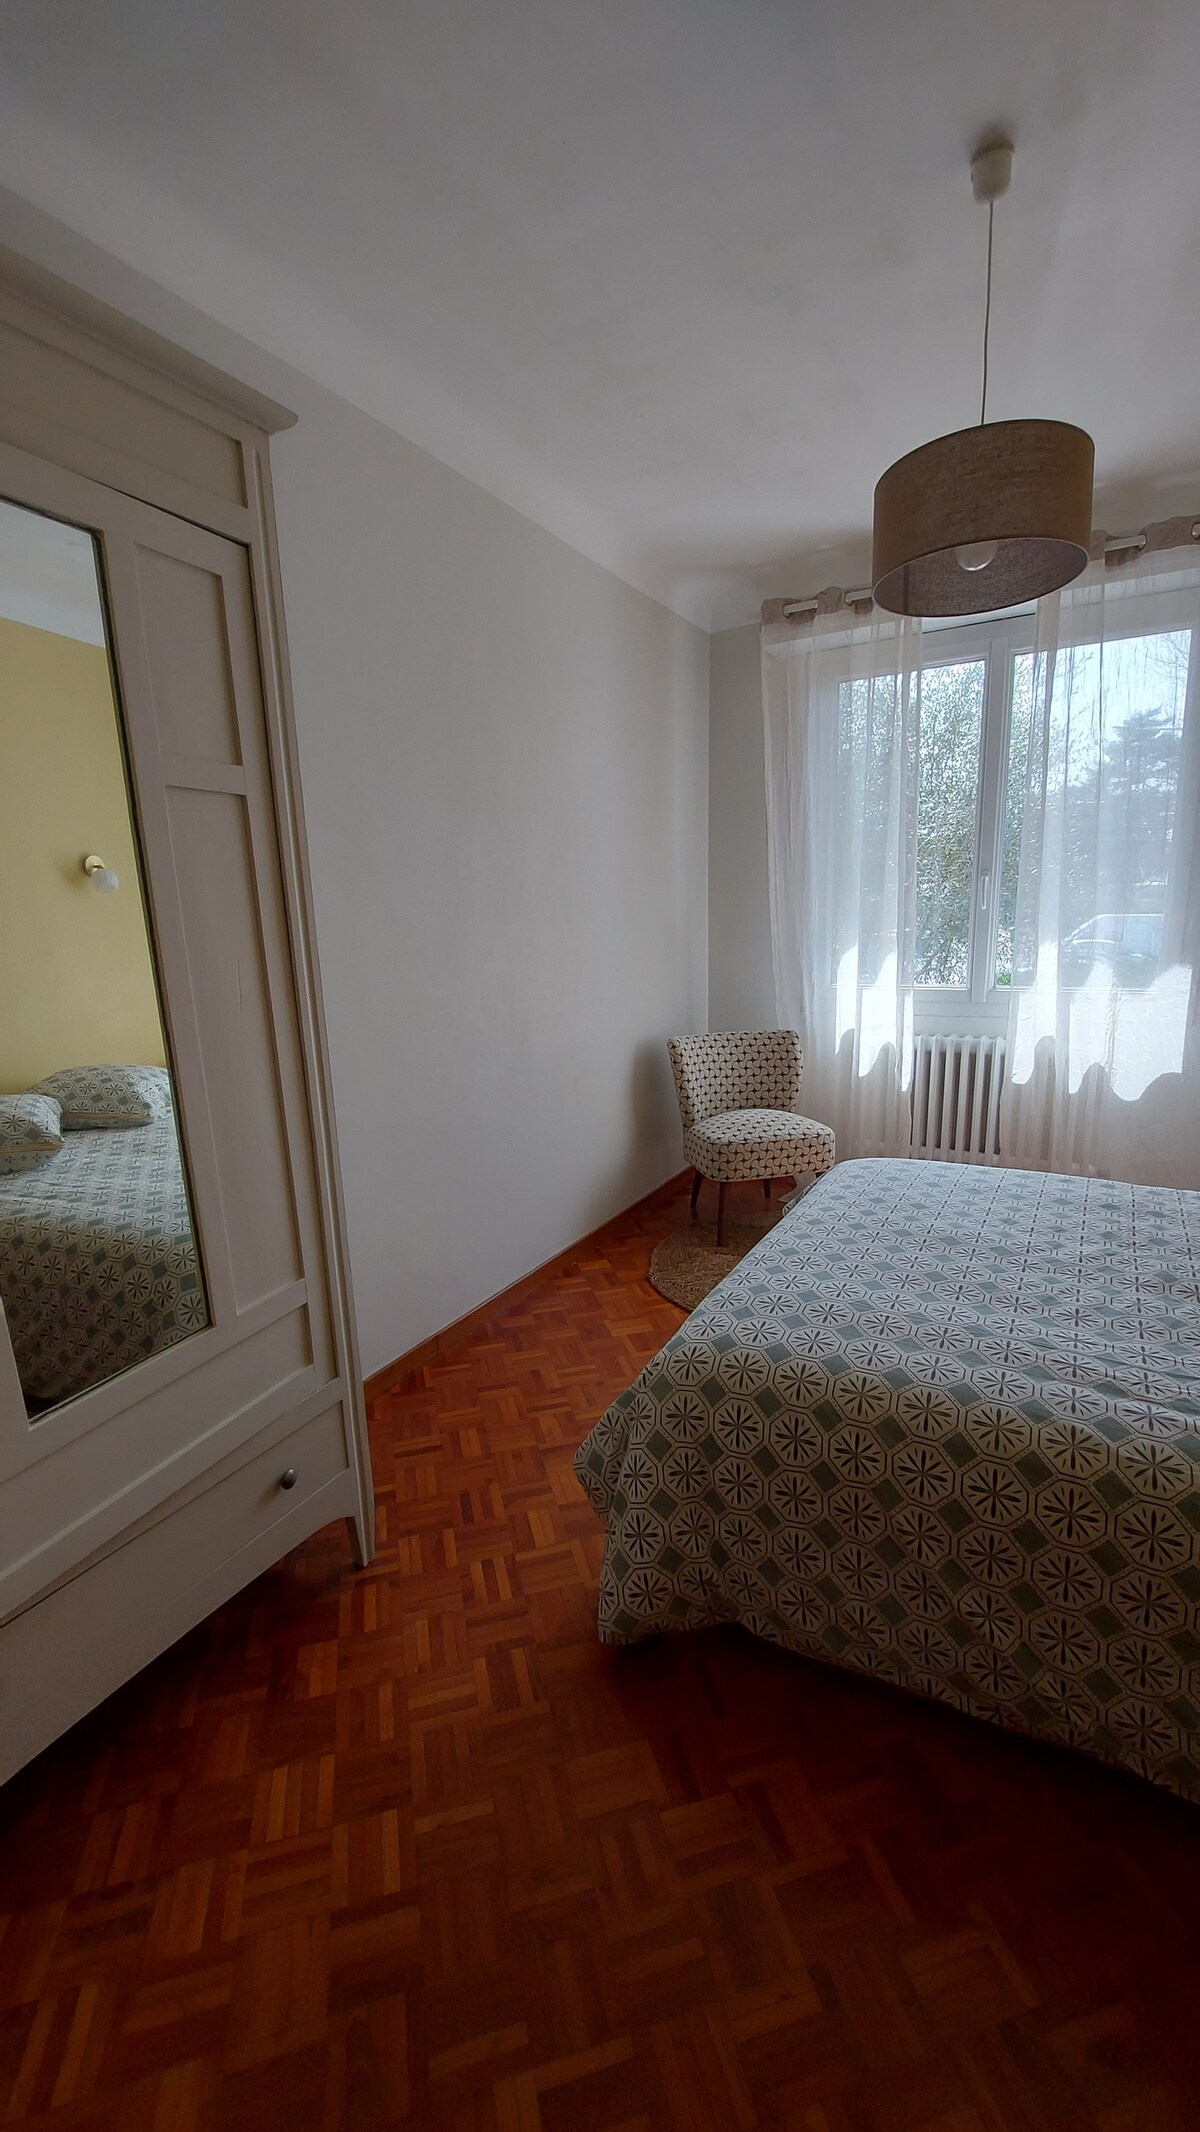 Appartement spacieux dans villa, terrasse, jardin